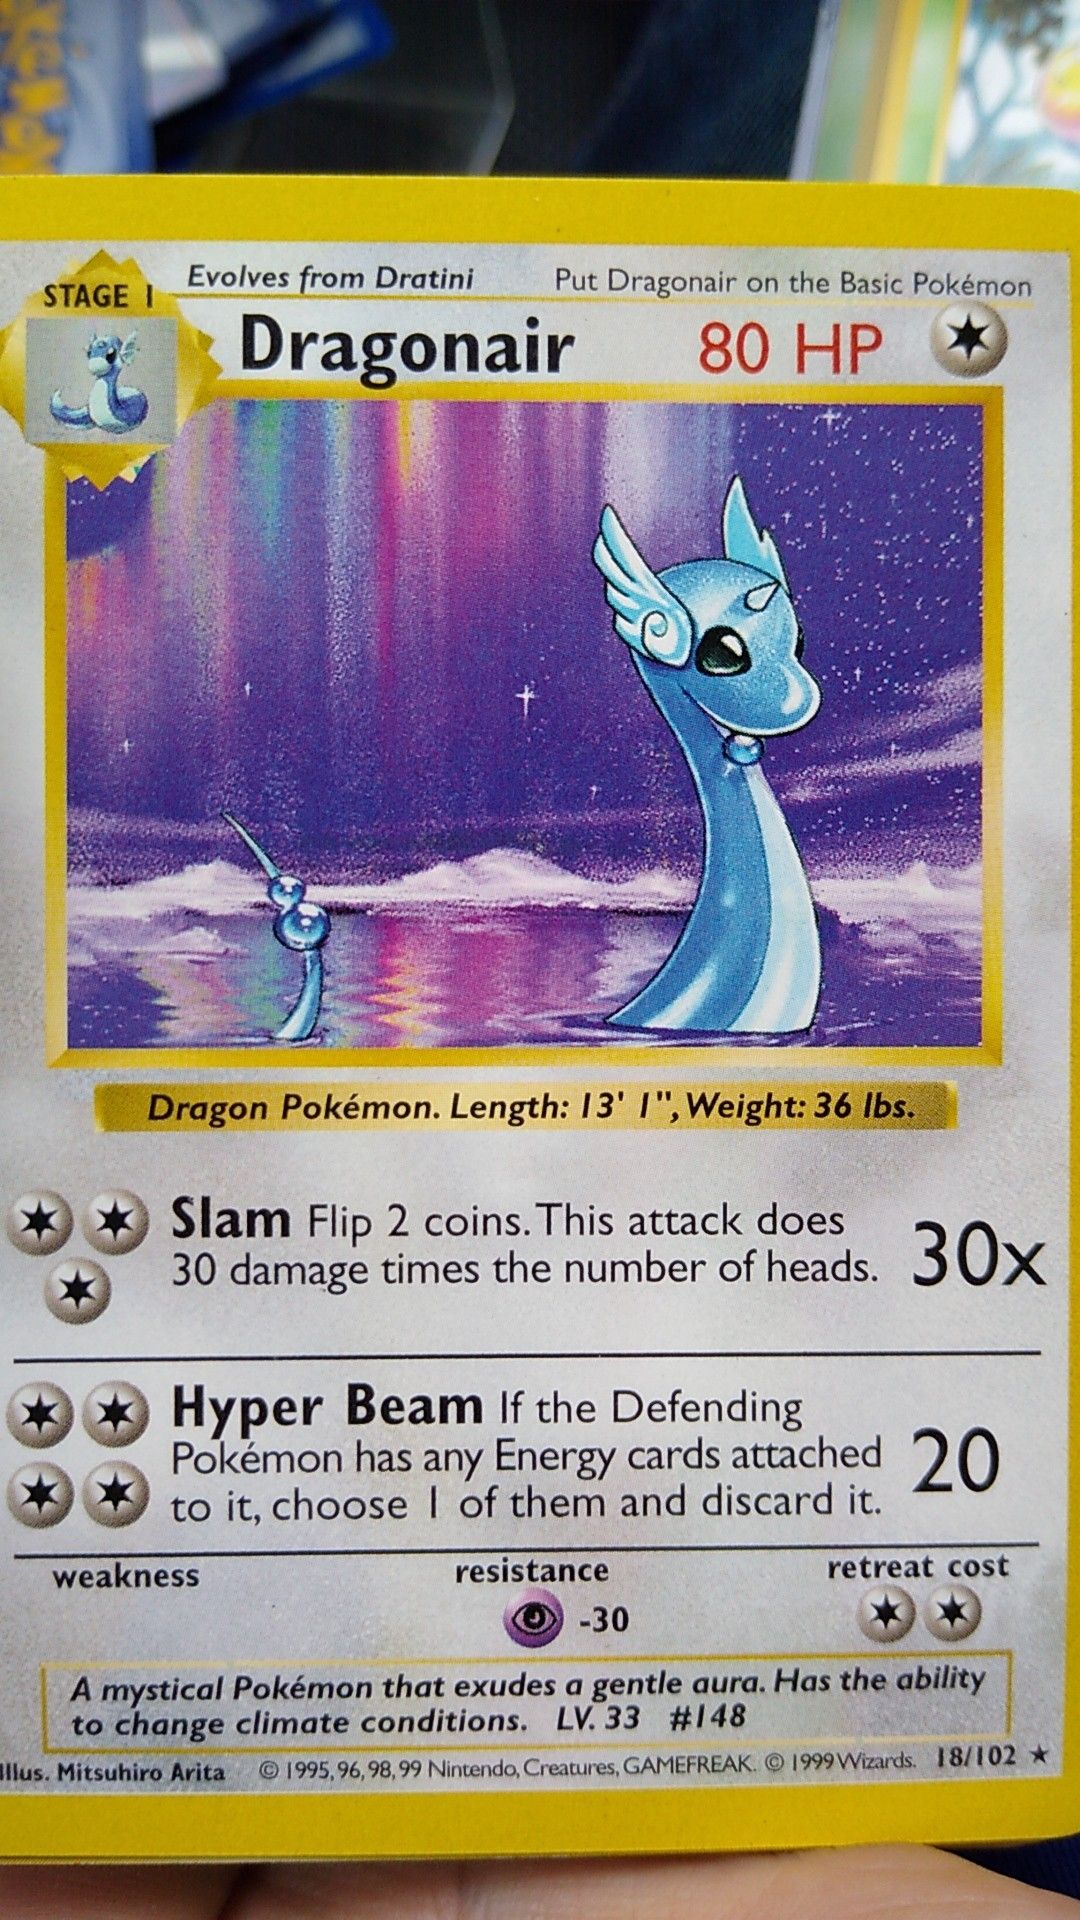 Very rare of Pokemon card